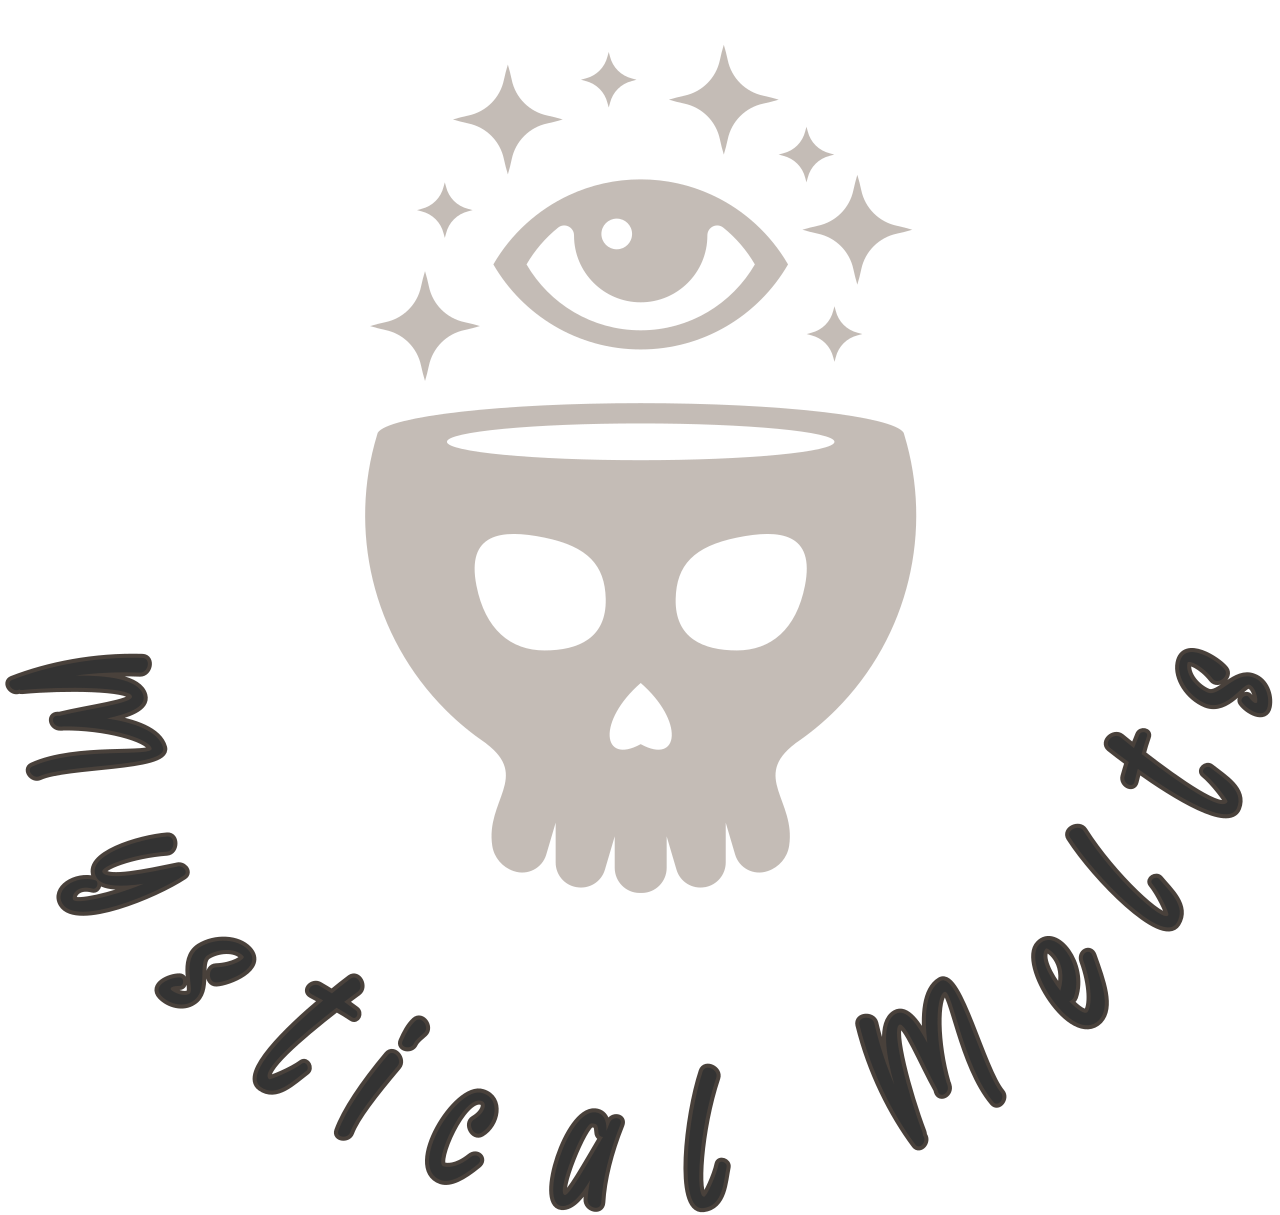 Mystical Melts's logo